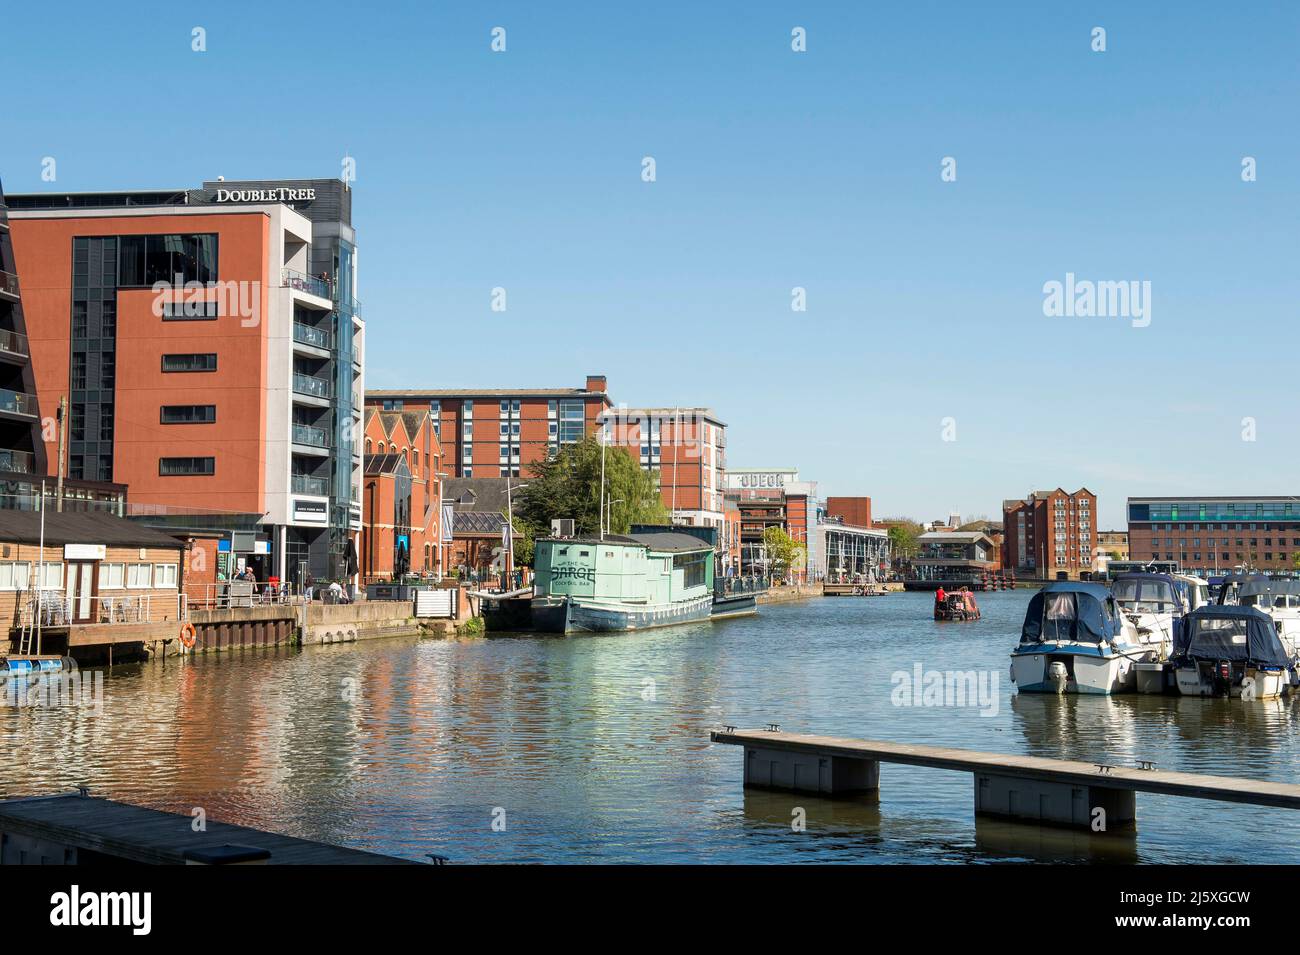 Lincoln, eine historische Domstadt in der Grafschaft Lincolnshire, Großbritannien.das Bild zeigt die Uferpromenade der Stadt - Brayford Wharf - inklusive Boote, RE Stockfoto